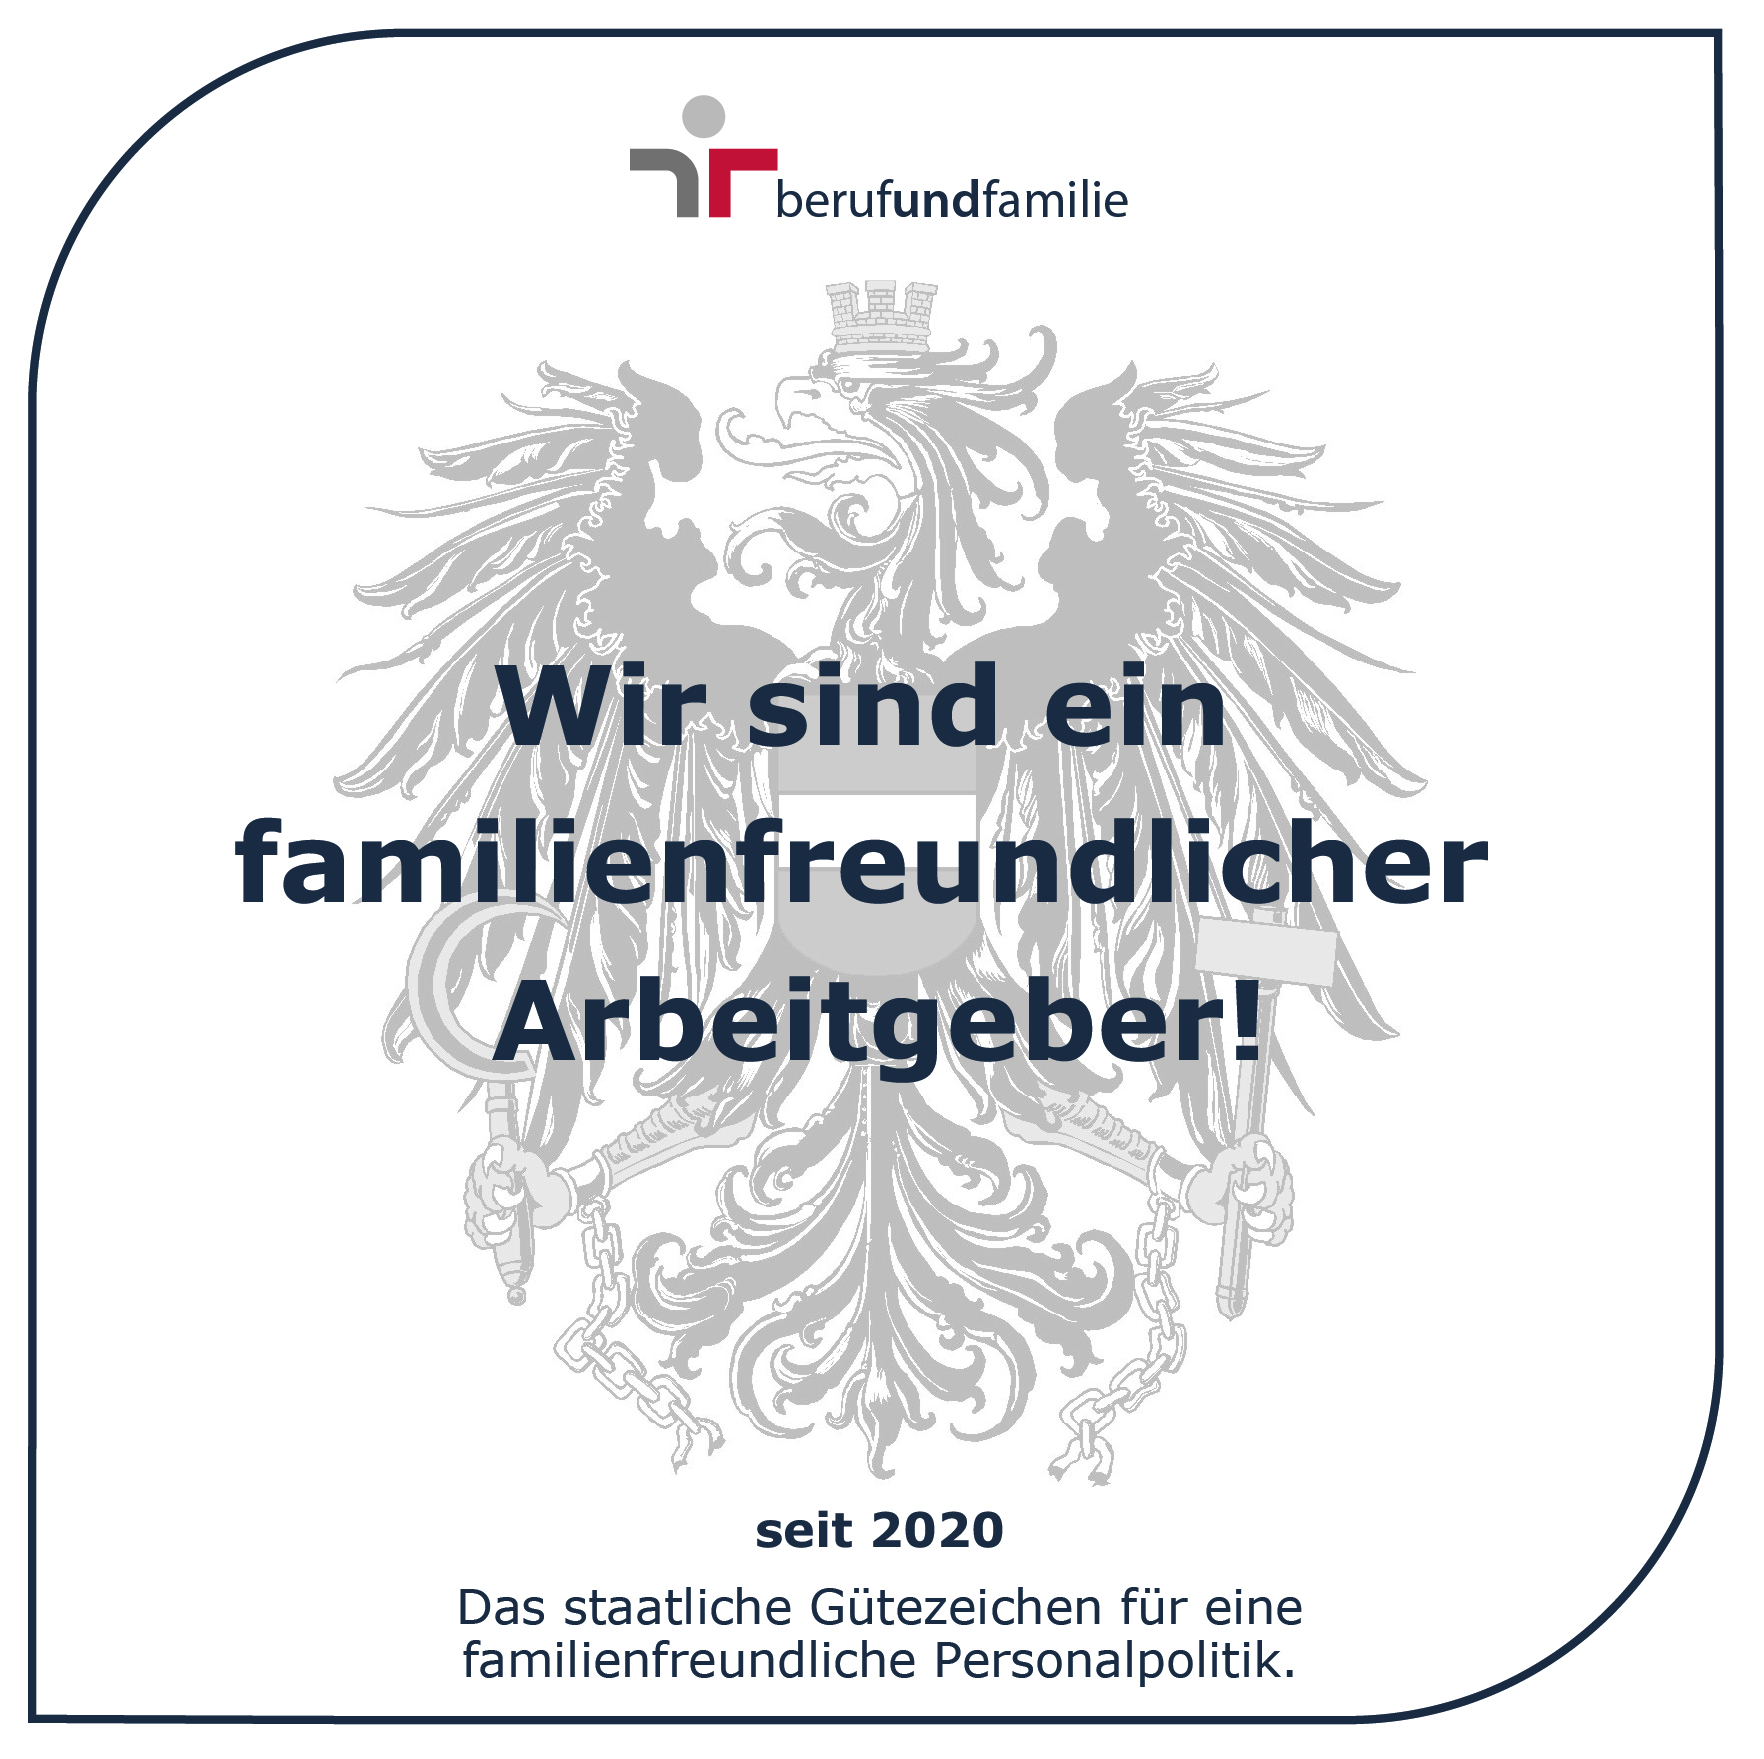 HYPO NOE Landesbank für Niederösterreich und Wien – BB Jobportal